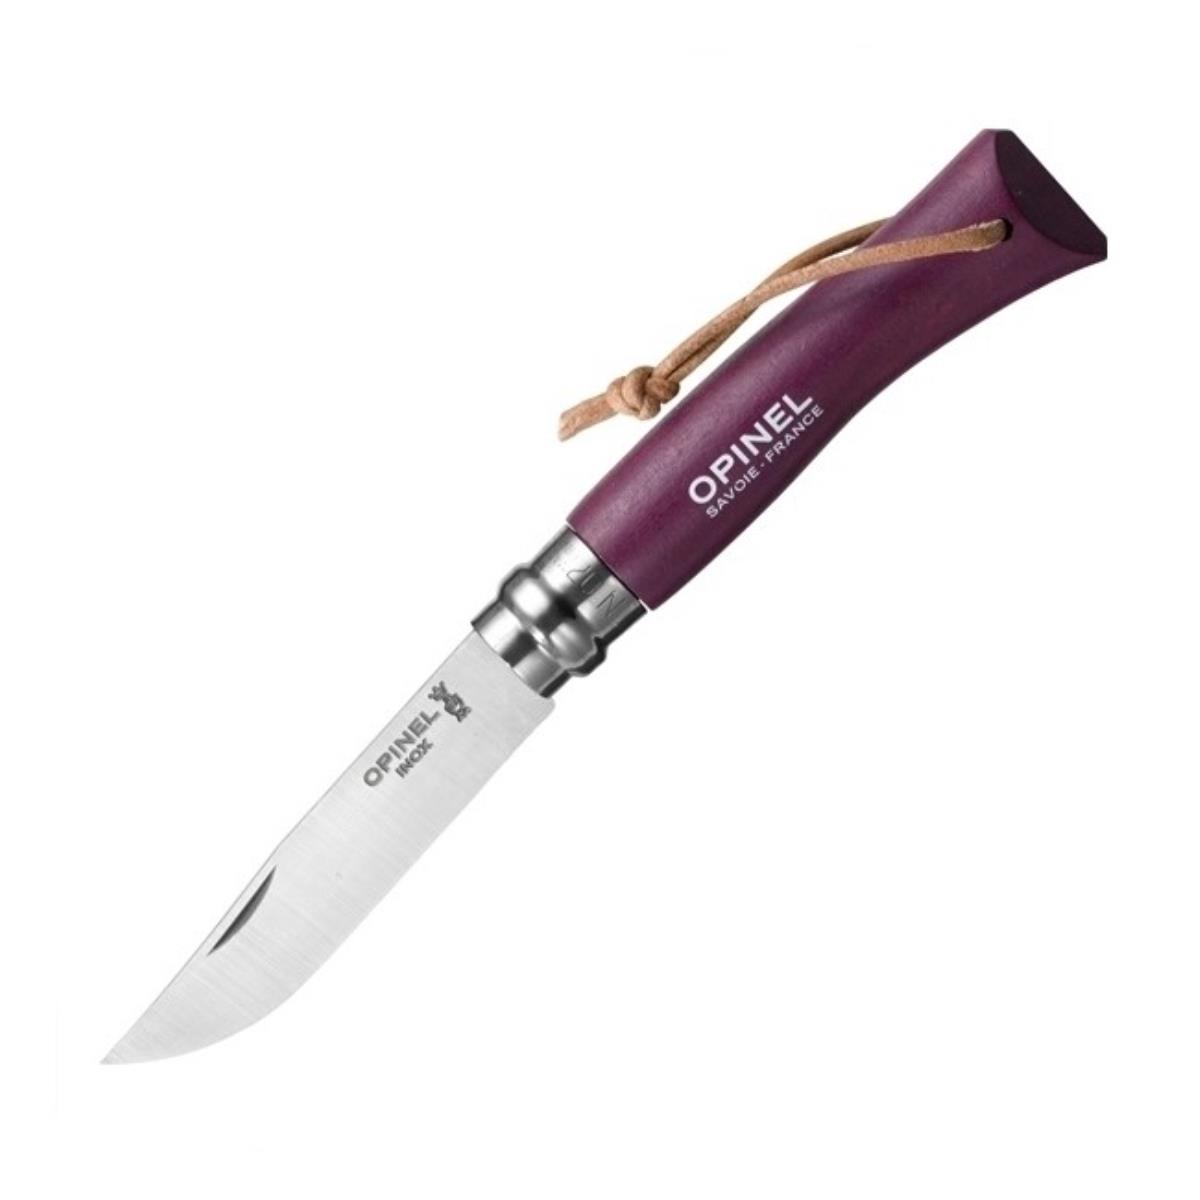 Нож №7 VRI Colored Tradition нерж. сталь, рукоять граб,  клинок 8см, темляк (слива) OPINEL скалка большая 49 см д 36 мм граб